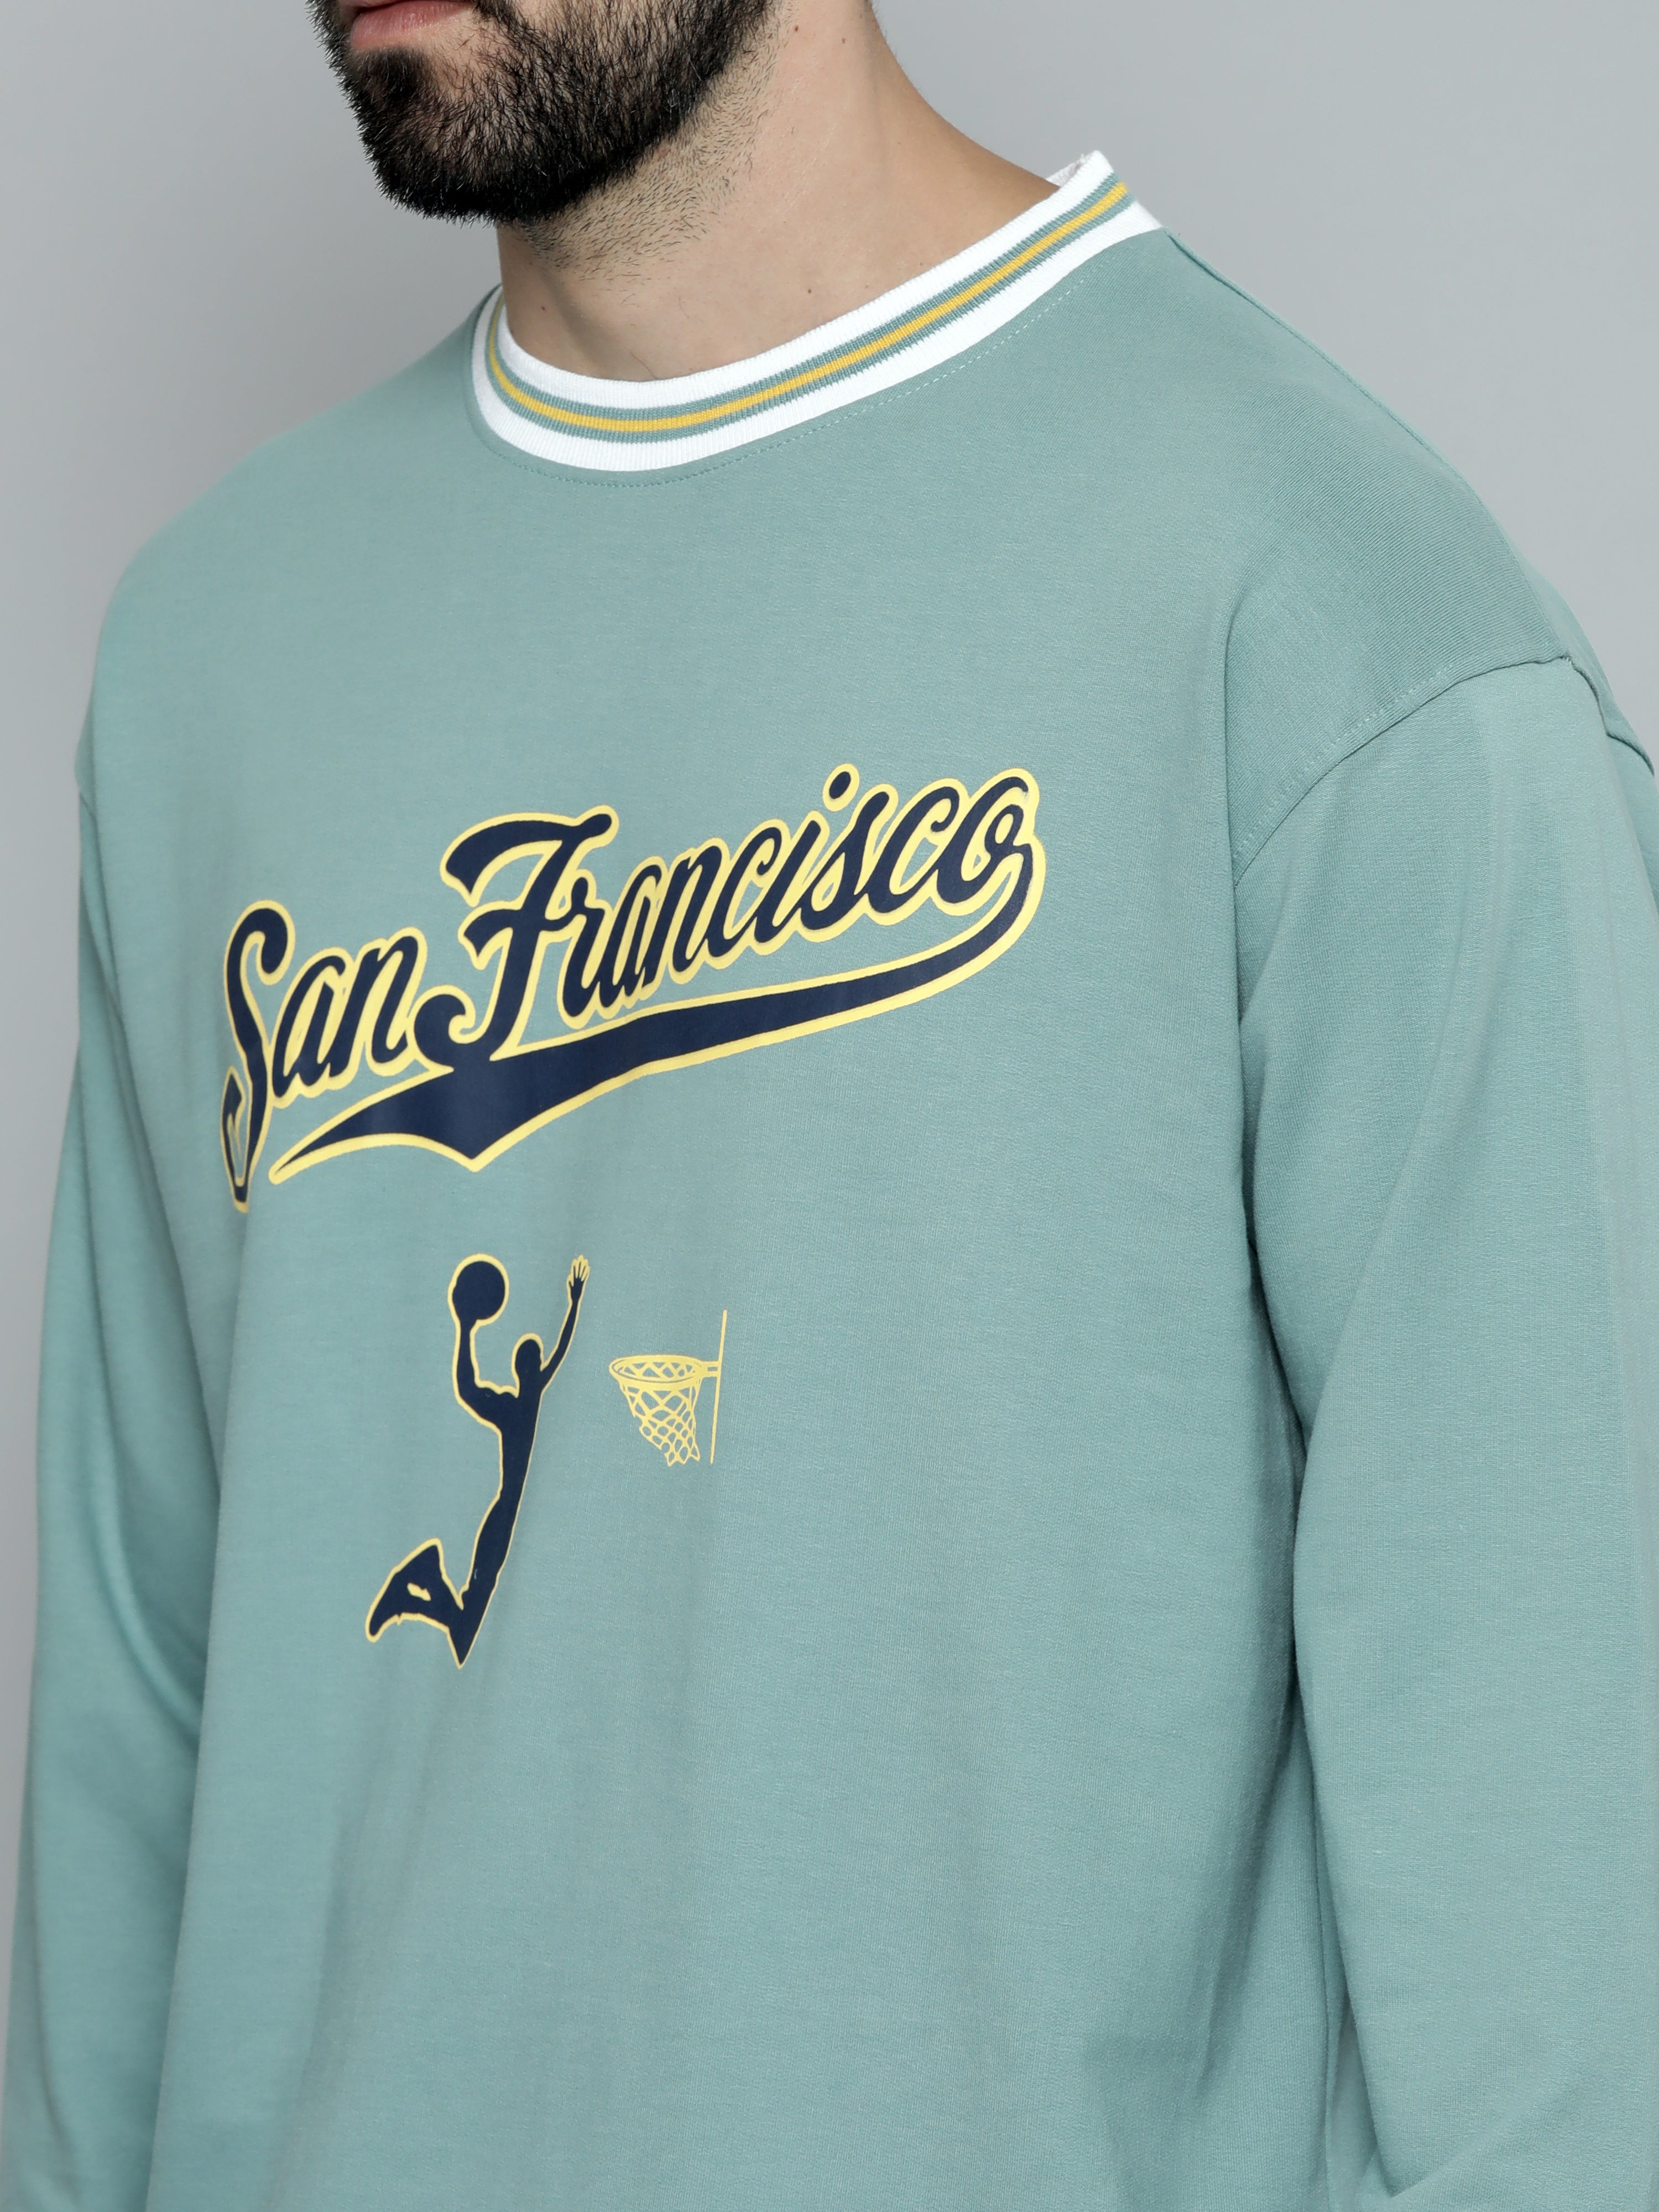 Sanfrancisco Berly Green FullSleeve T-Shirt